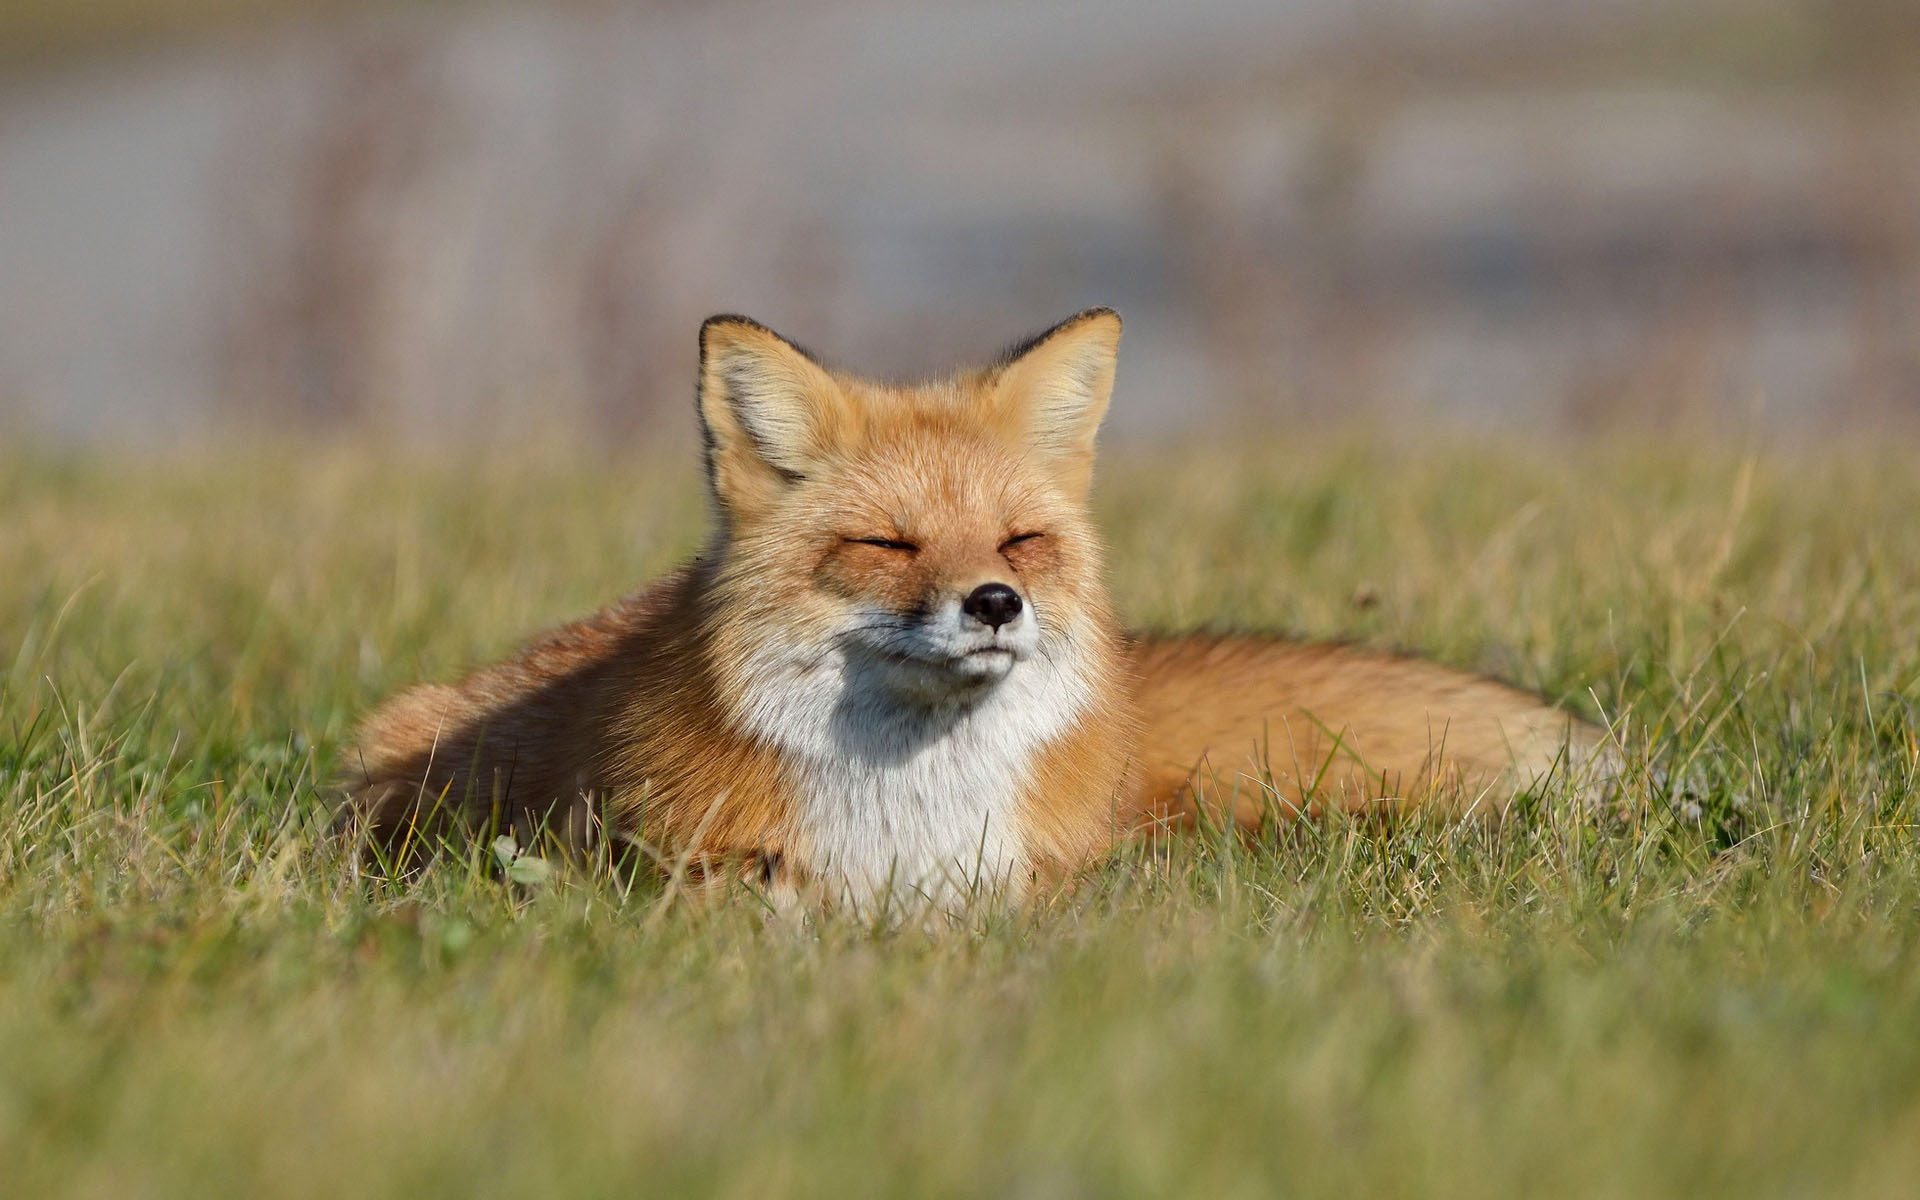 免费照片： 狐狸, 动物, 野生动物, 摄影, 自然